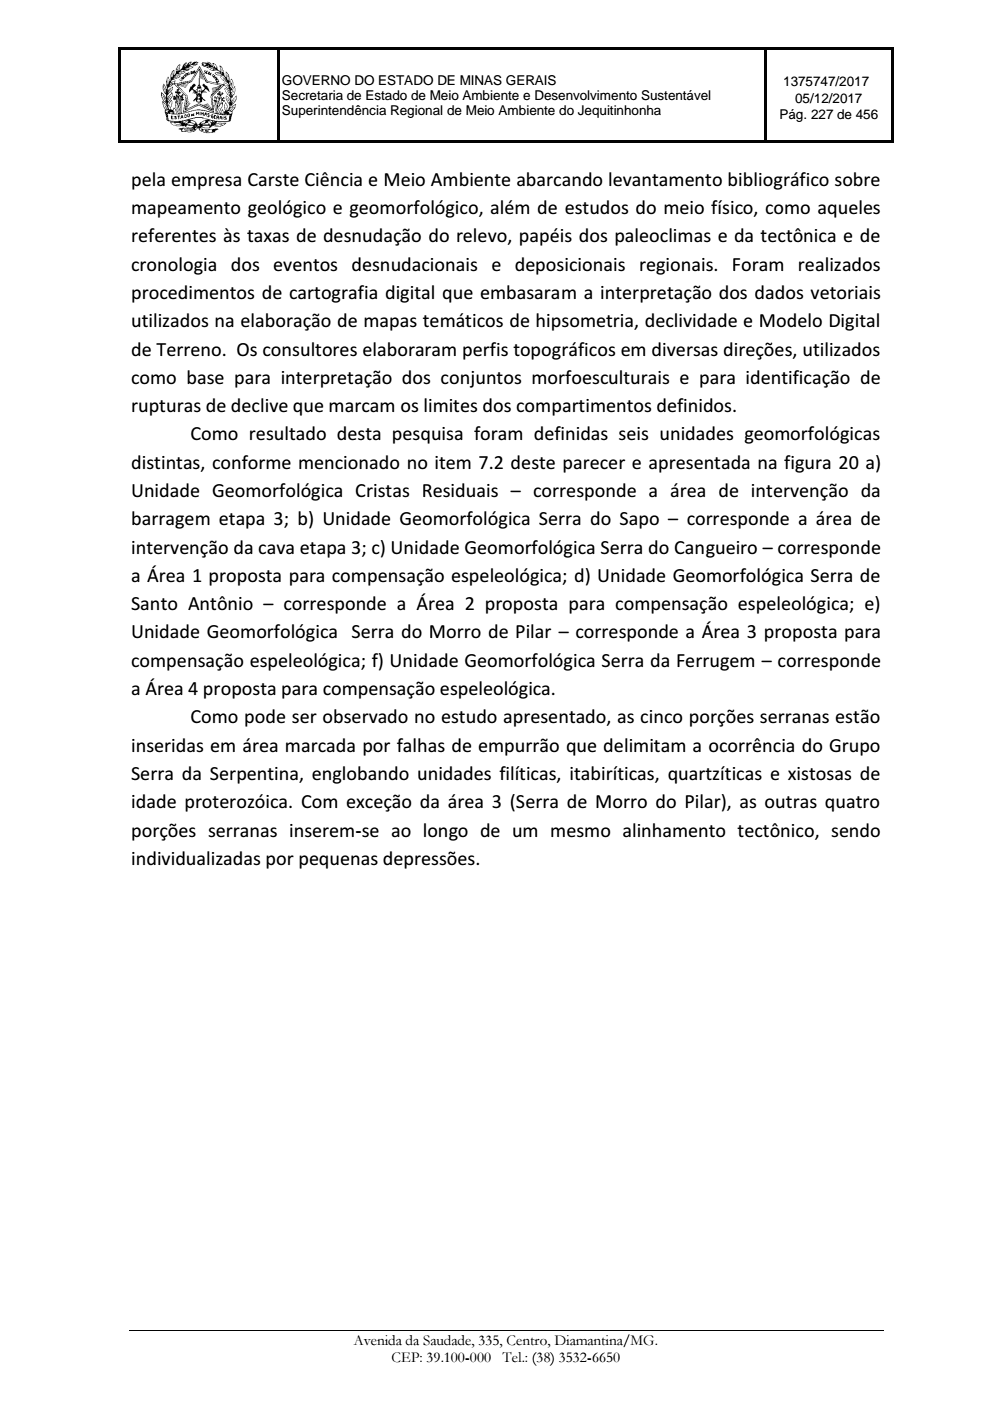 Page 227 from Parecer único da Secretaria de estado de Meio Ambiente e Desenvolvimento Sustentável (SEMAD)